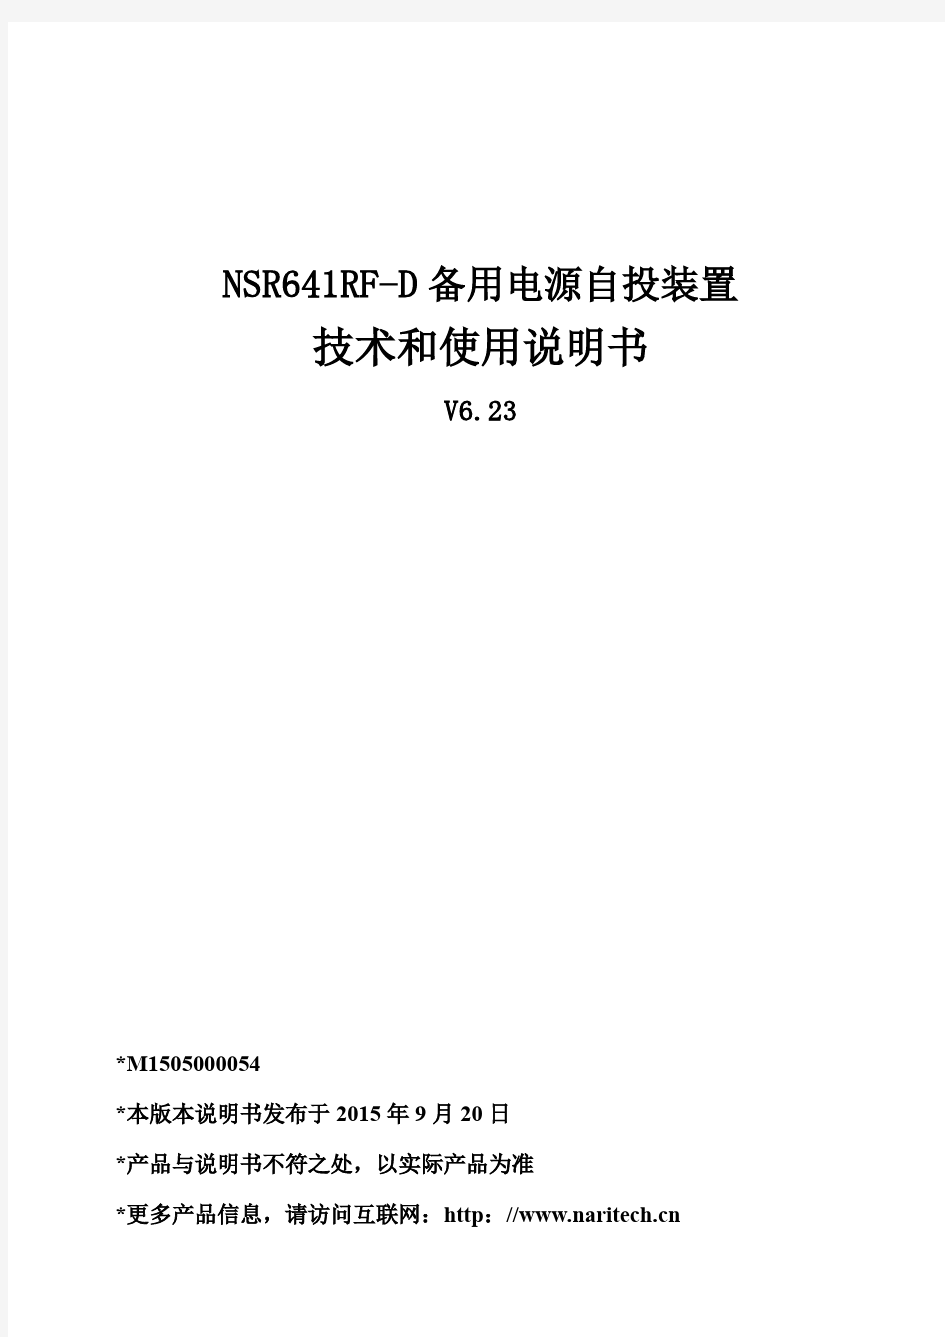 NSR641RF-D备用电源自投装置技术使用说明书